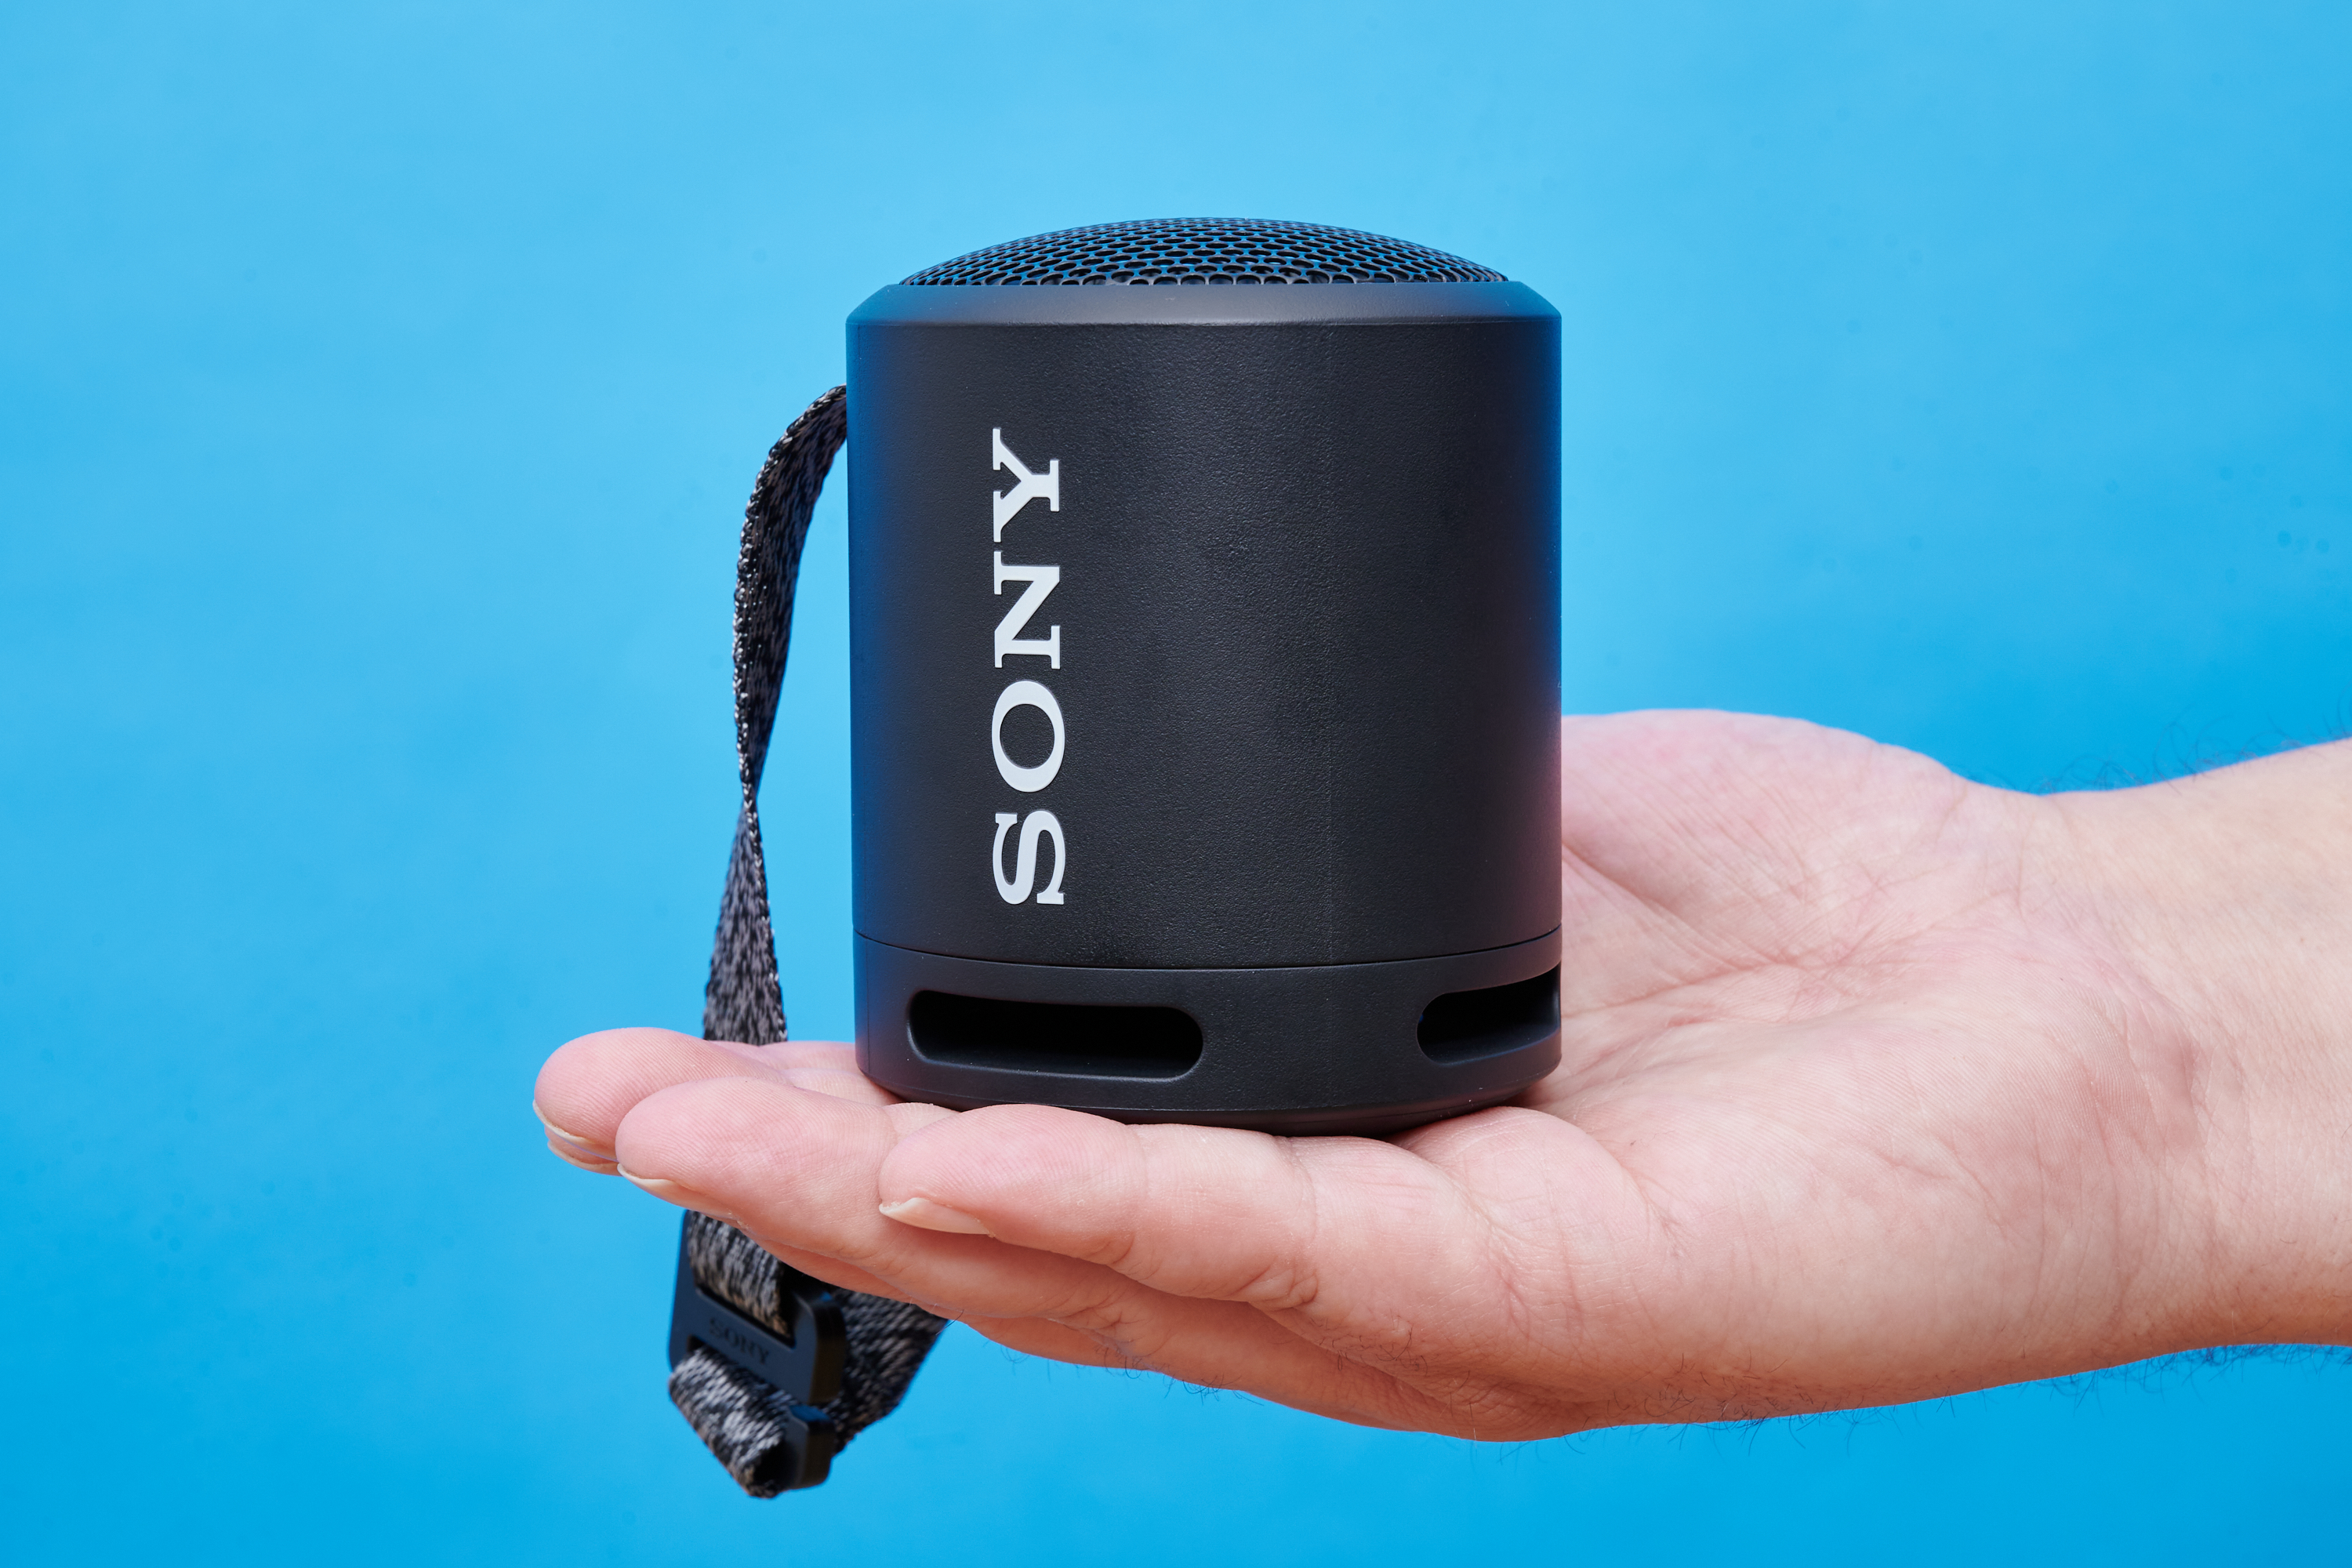 Sony SRS-XB13 im Test: Wie gut ist Sonys kleinste Bluetooth-Box? | Lautsprecher